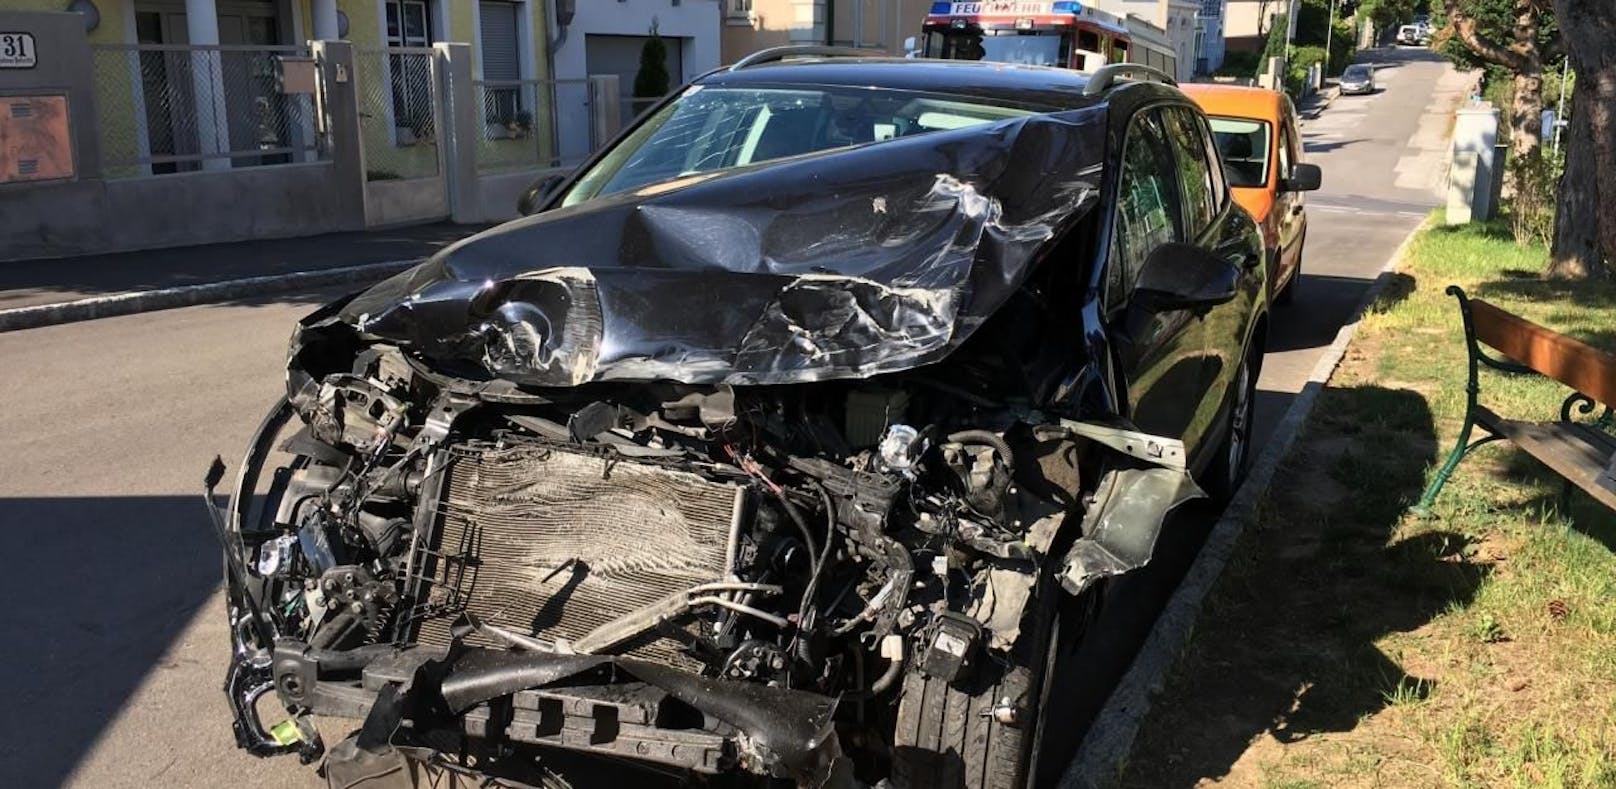 Frau verletzt: SUV krachte in Gemeindefahrzeug